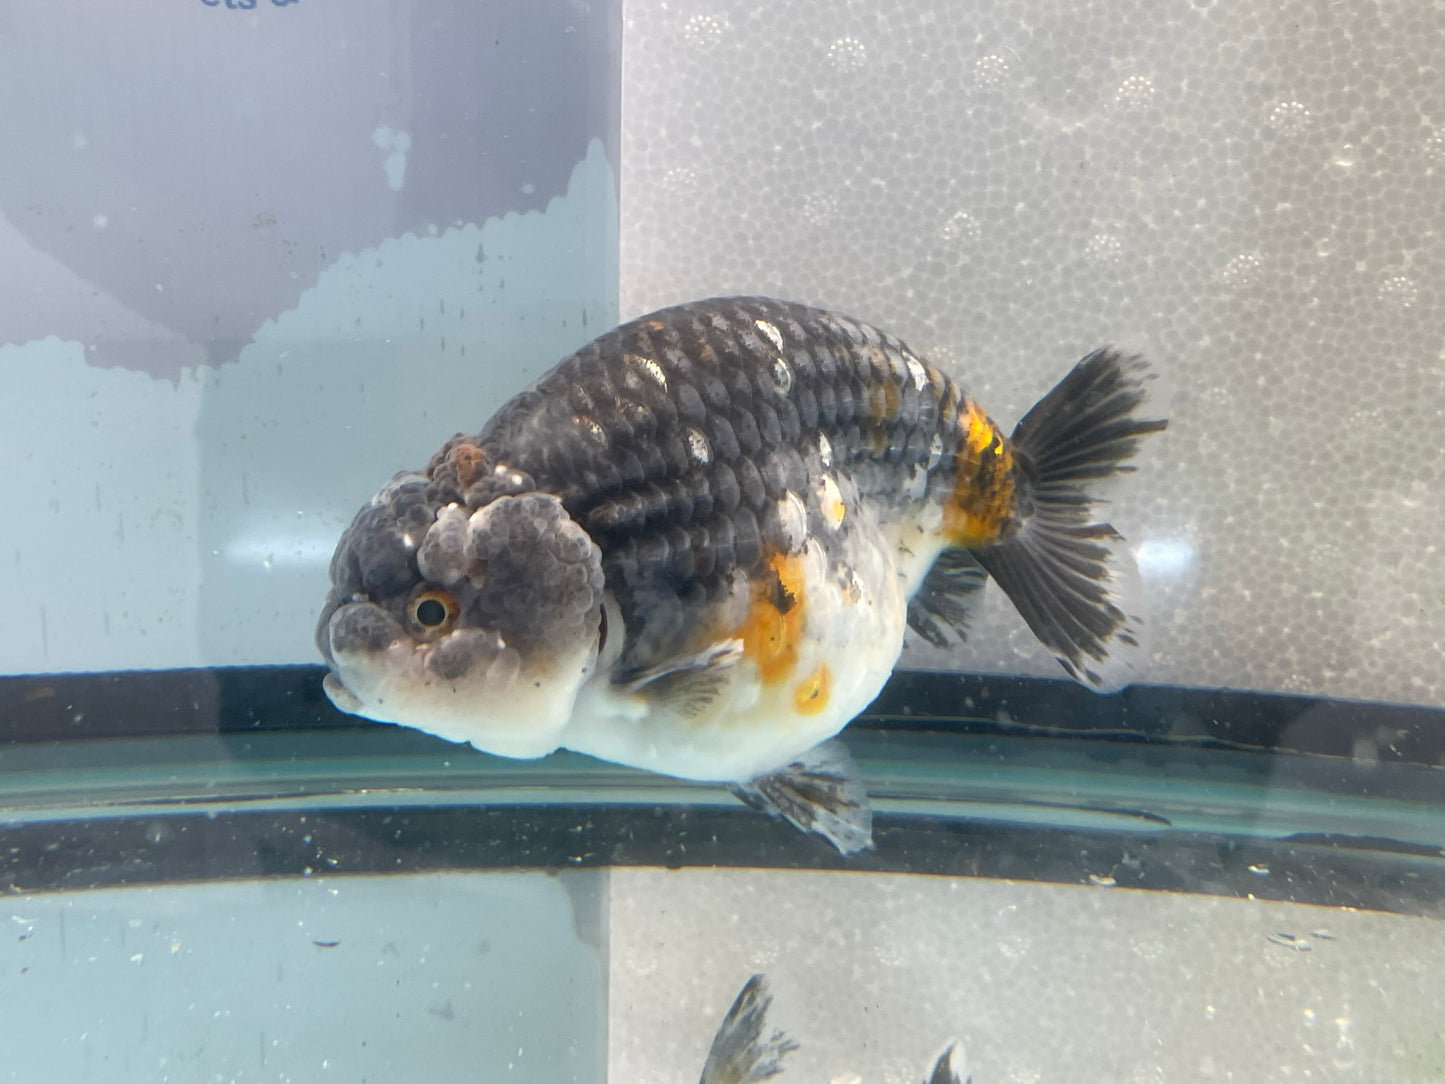 Jumbo Ranchu 13-14cm Fancy Goldfish (Fish In Photo) #1